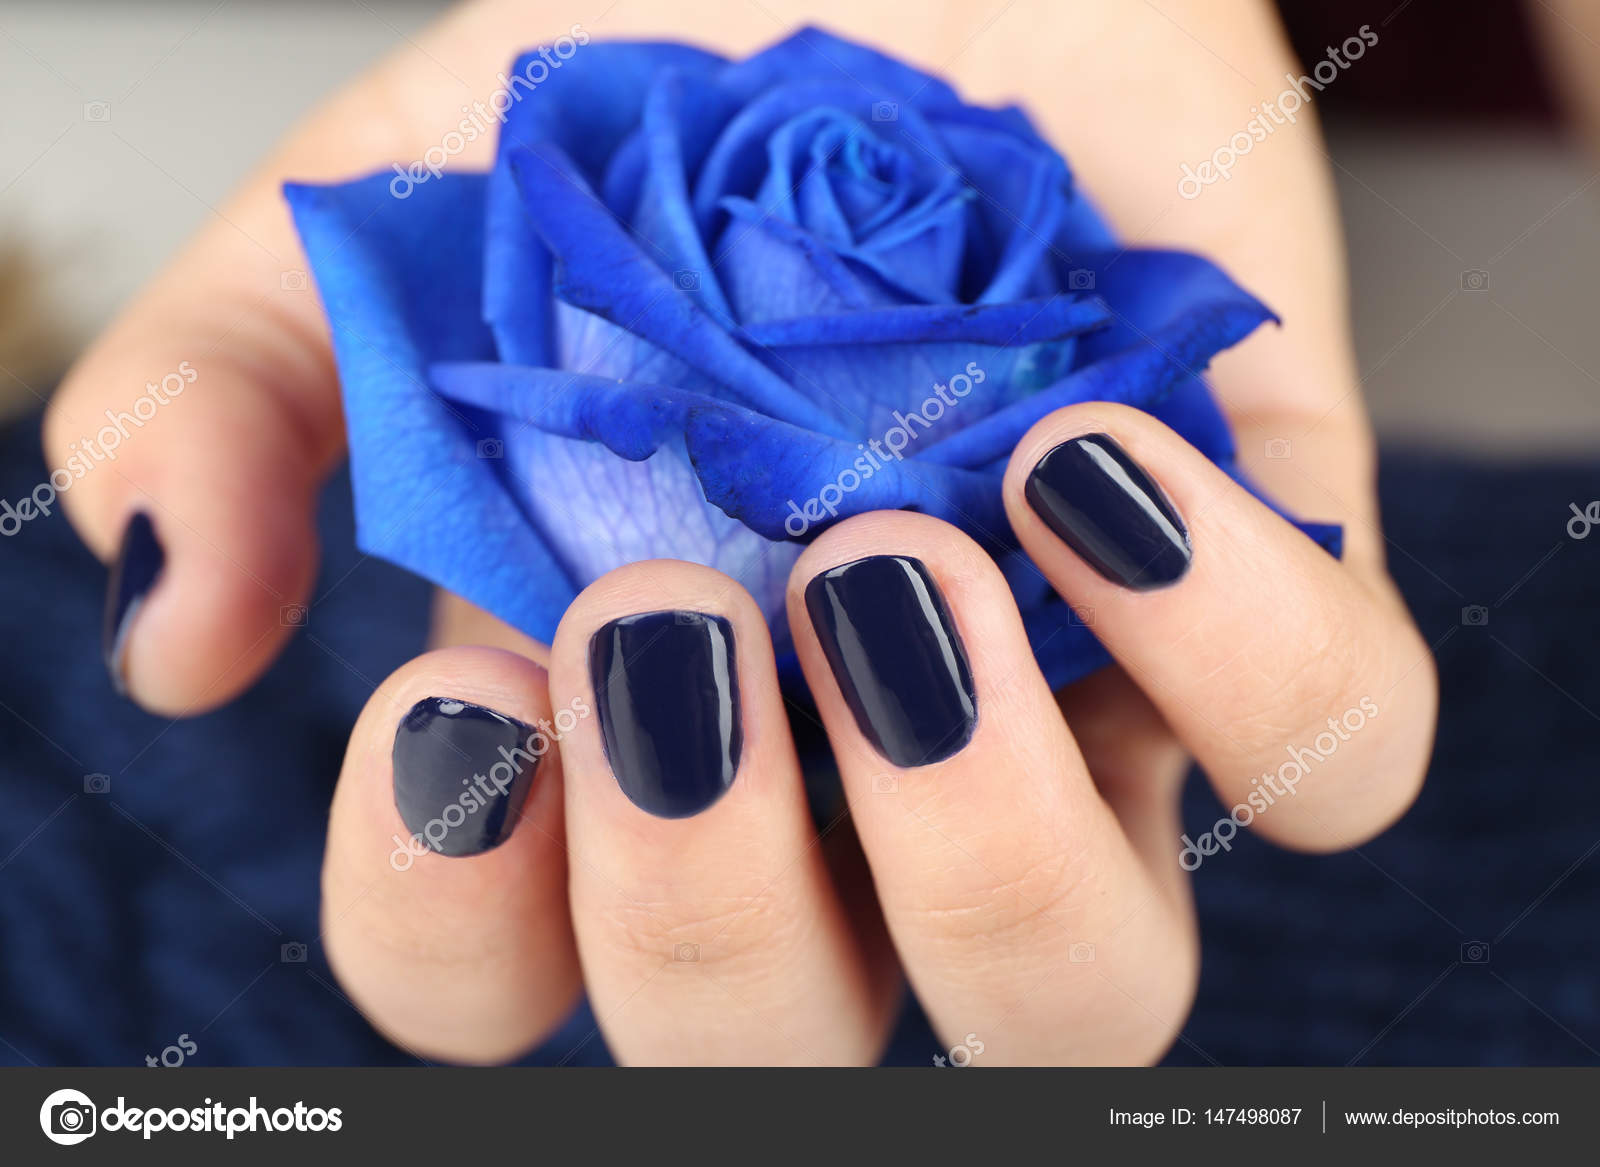 Fotos de Rosa azul, Imagens de Rosa azul sem royalties | Depositphotos